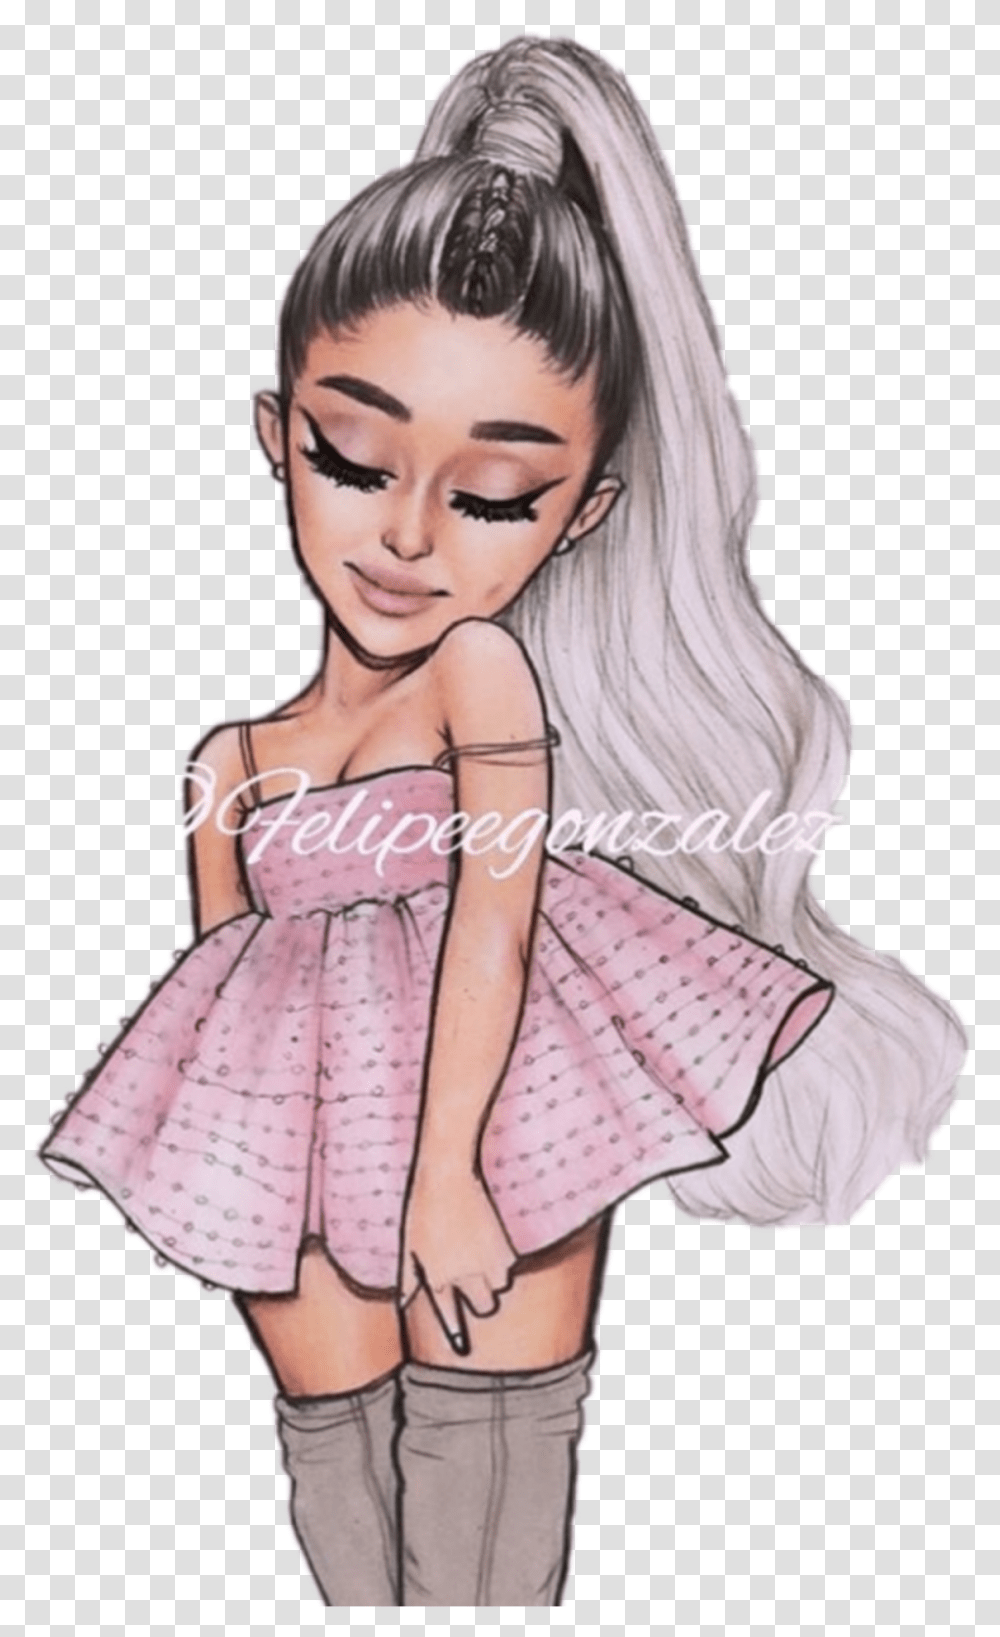 Arianagrande Ariana Grande Cute Little Child Pink Paste Cute Cartoon Cute Ariana Grande, Person, Human, Female Transparent Png